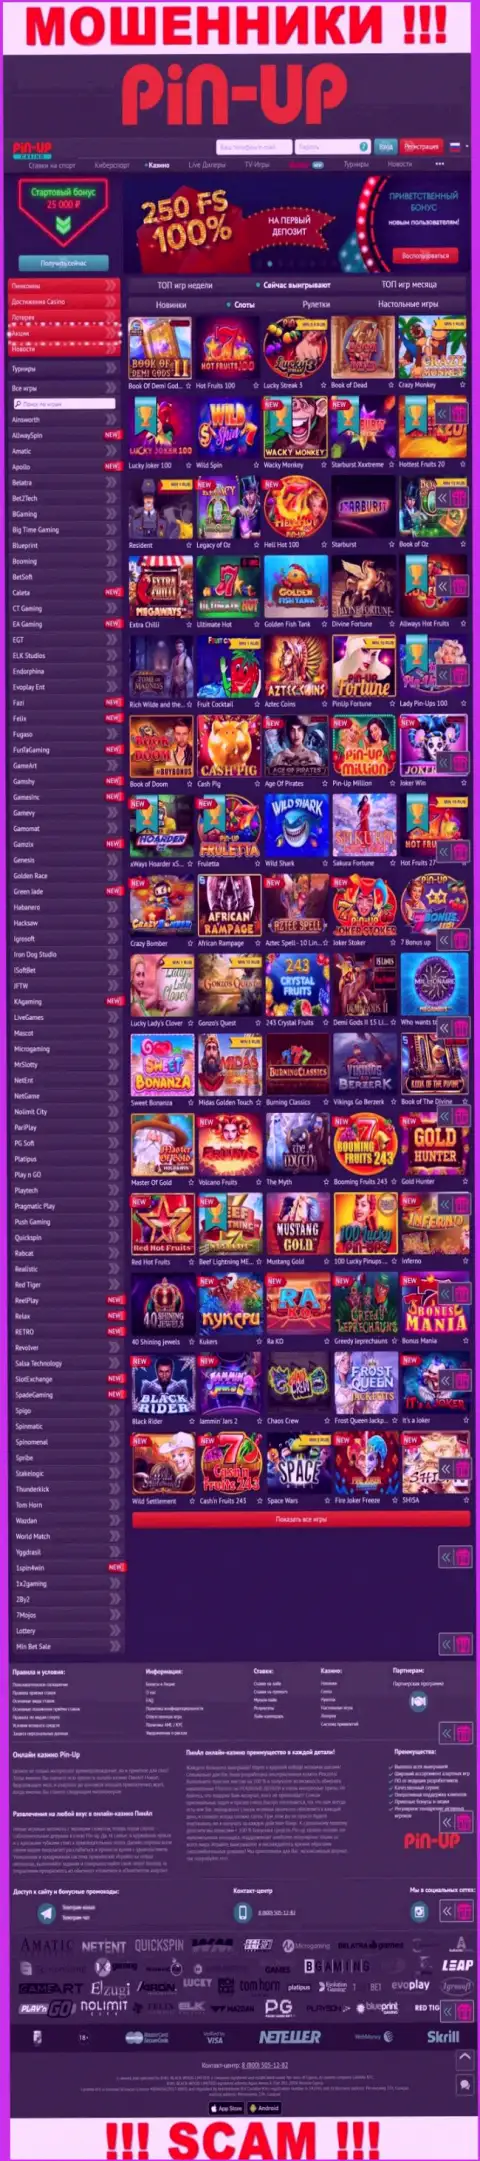 Pin-Up Casino - это официальный информационный портал обманщиков Пин-Ап Казино